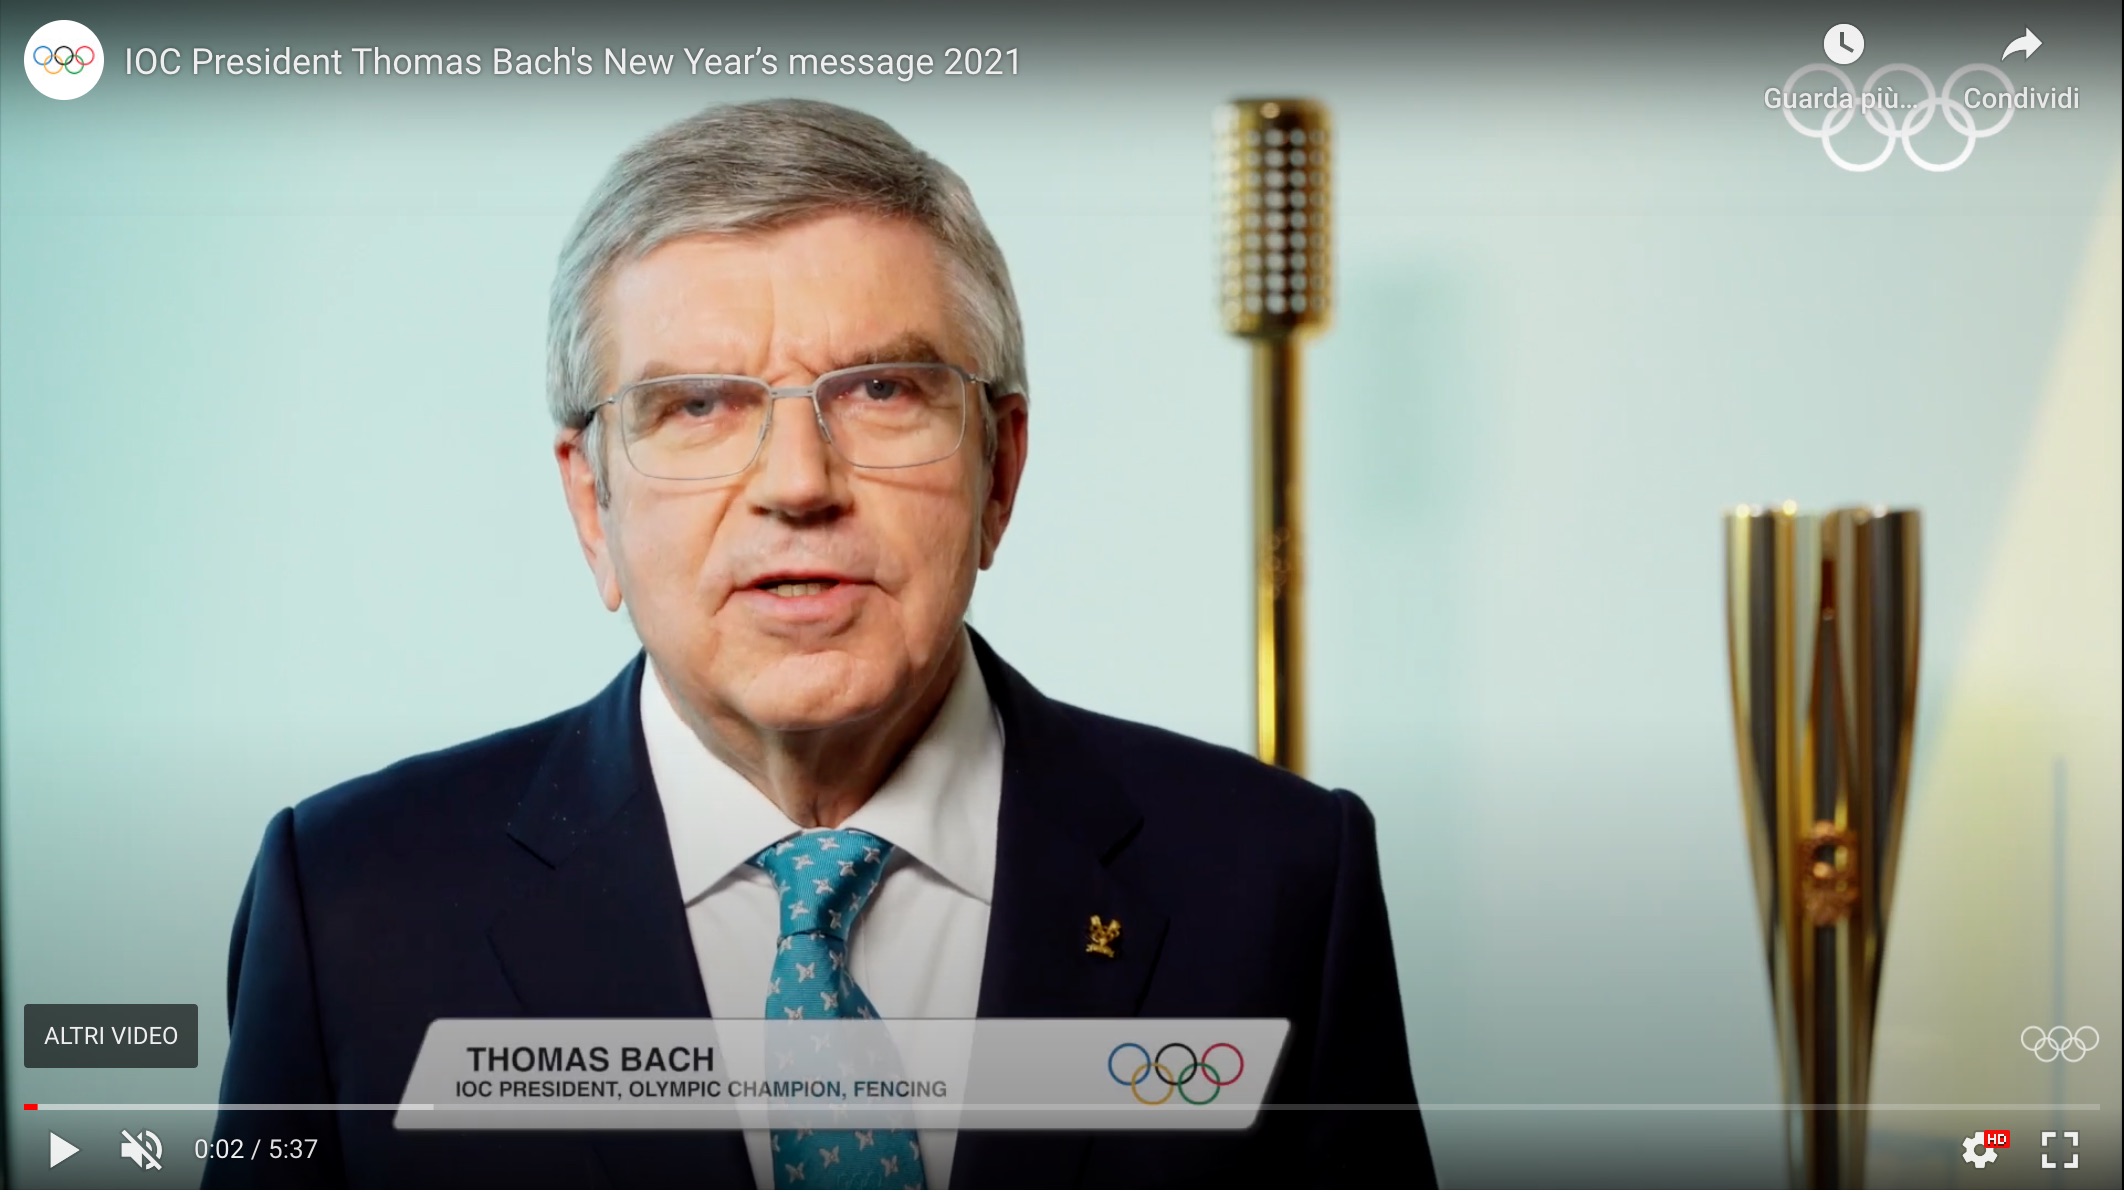 “Olimpiadi di Tokyo la luce alla fine del tunnel”: il messaggio di capodanno di Thomas Bach